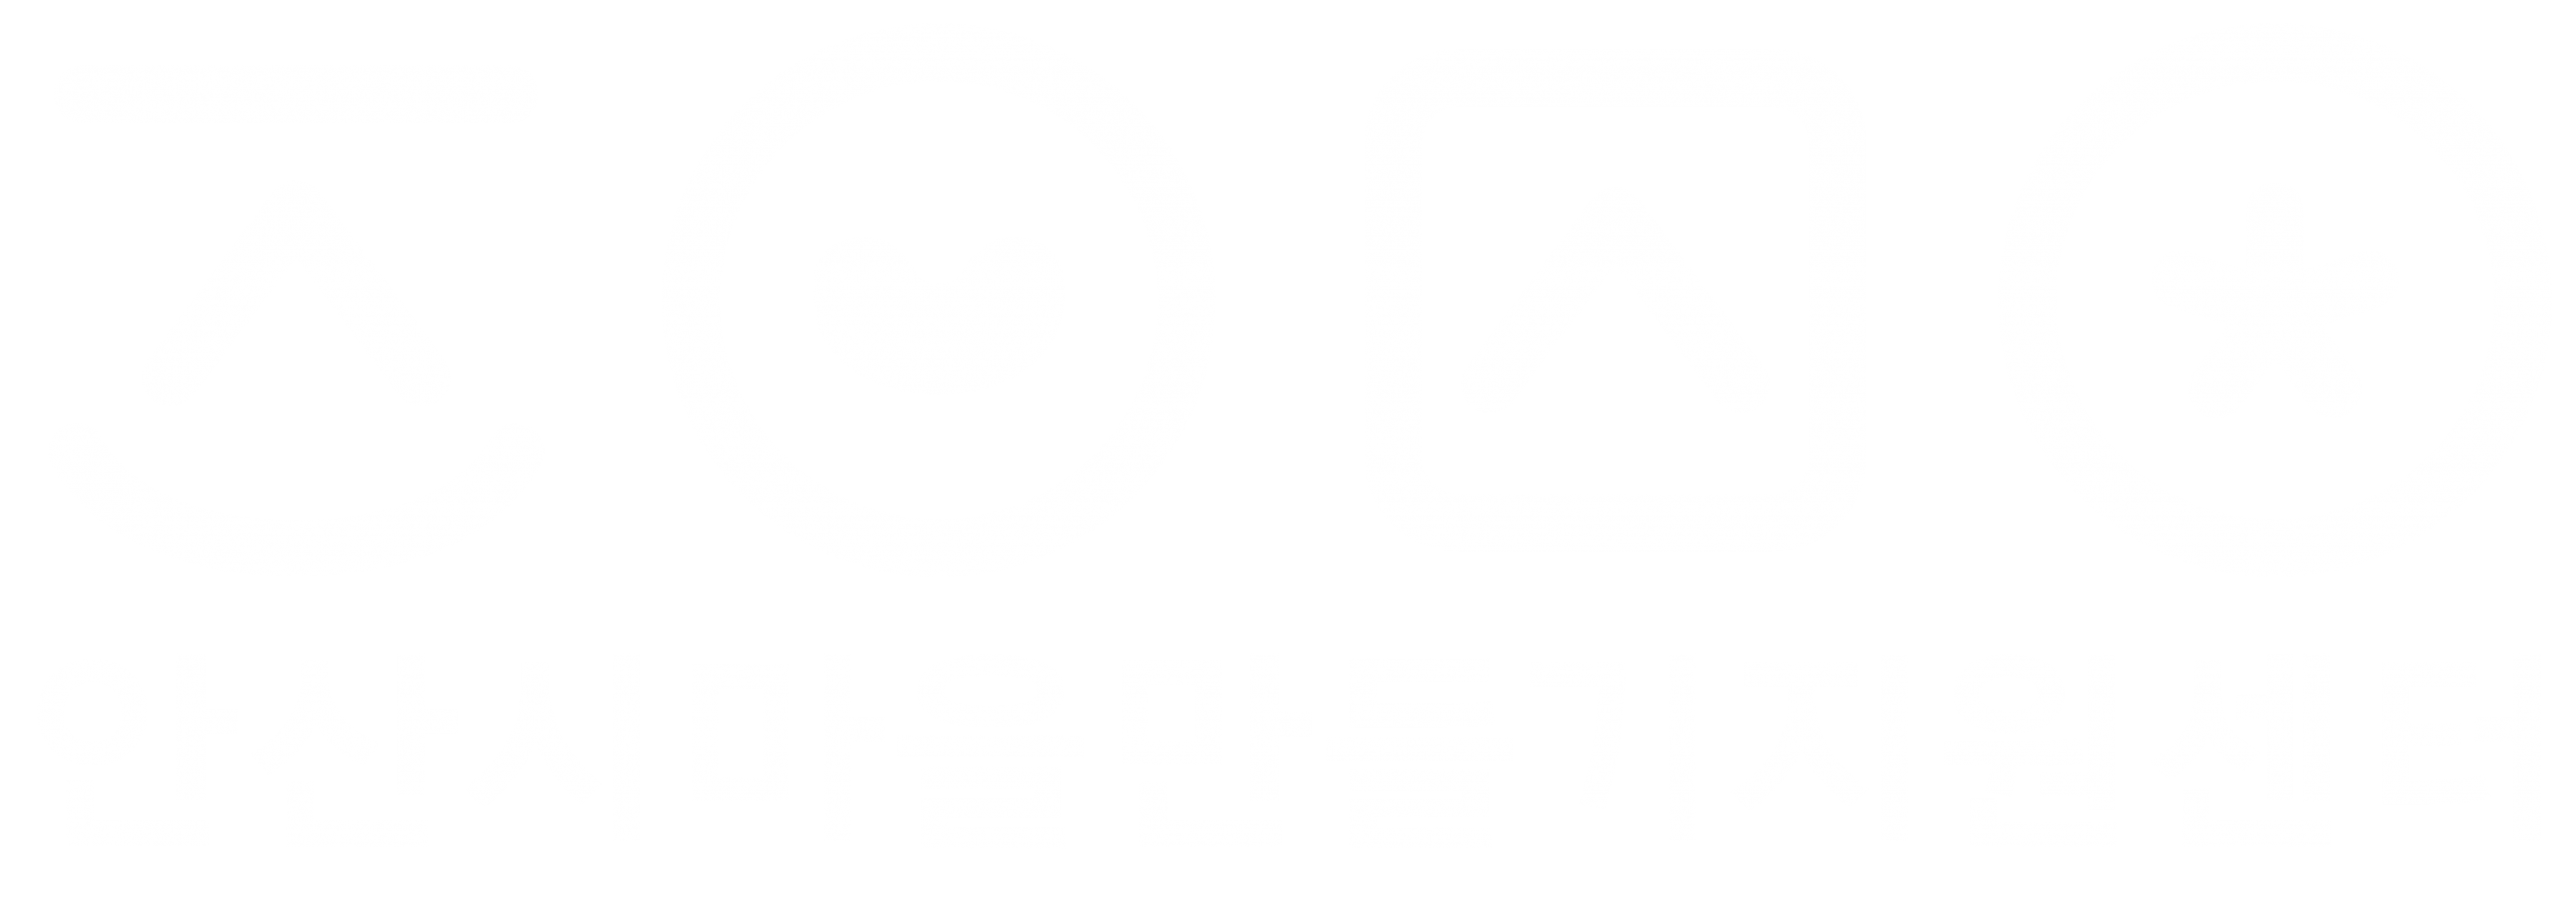 안산시마을만들기지원센터_로고(흰색).png